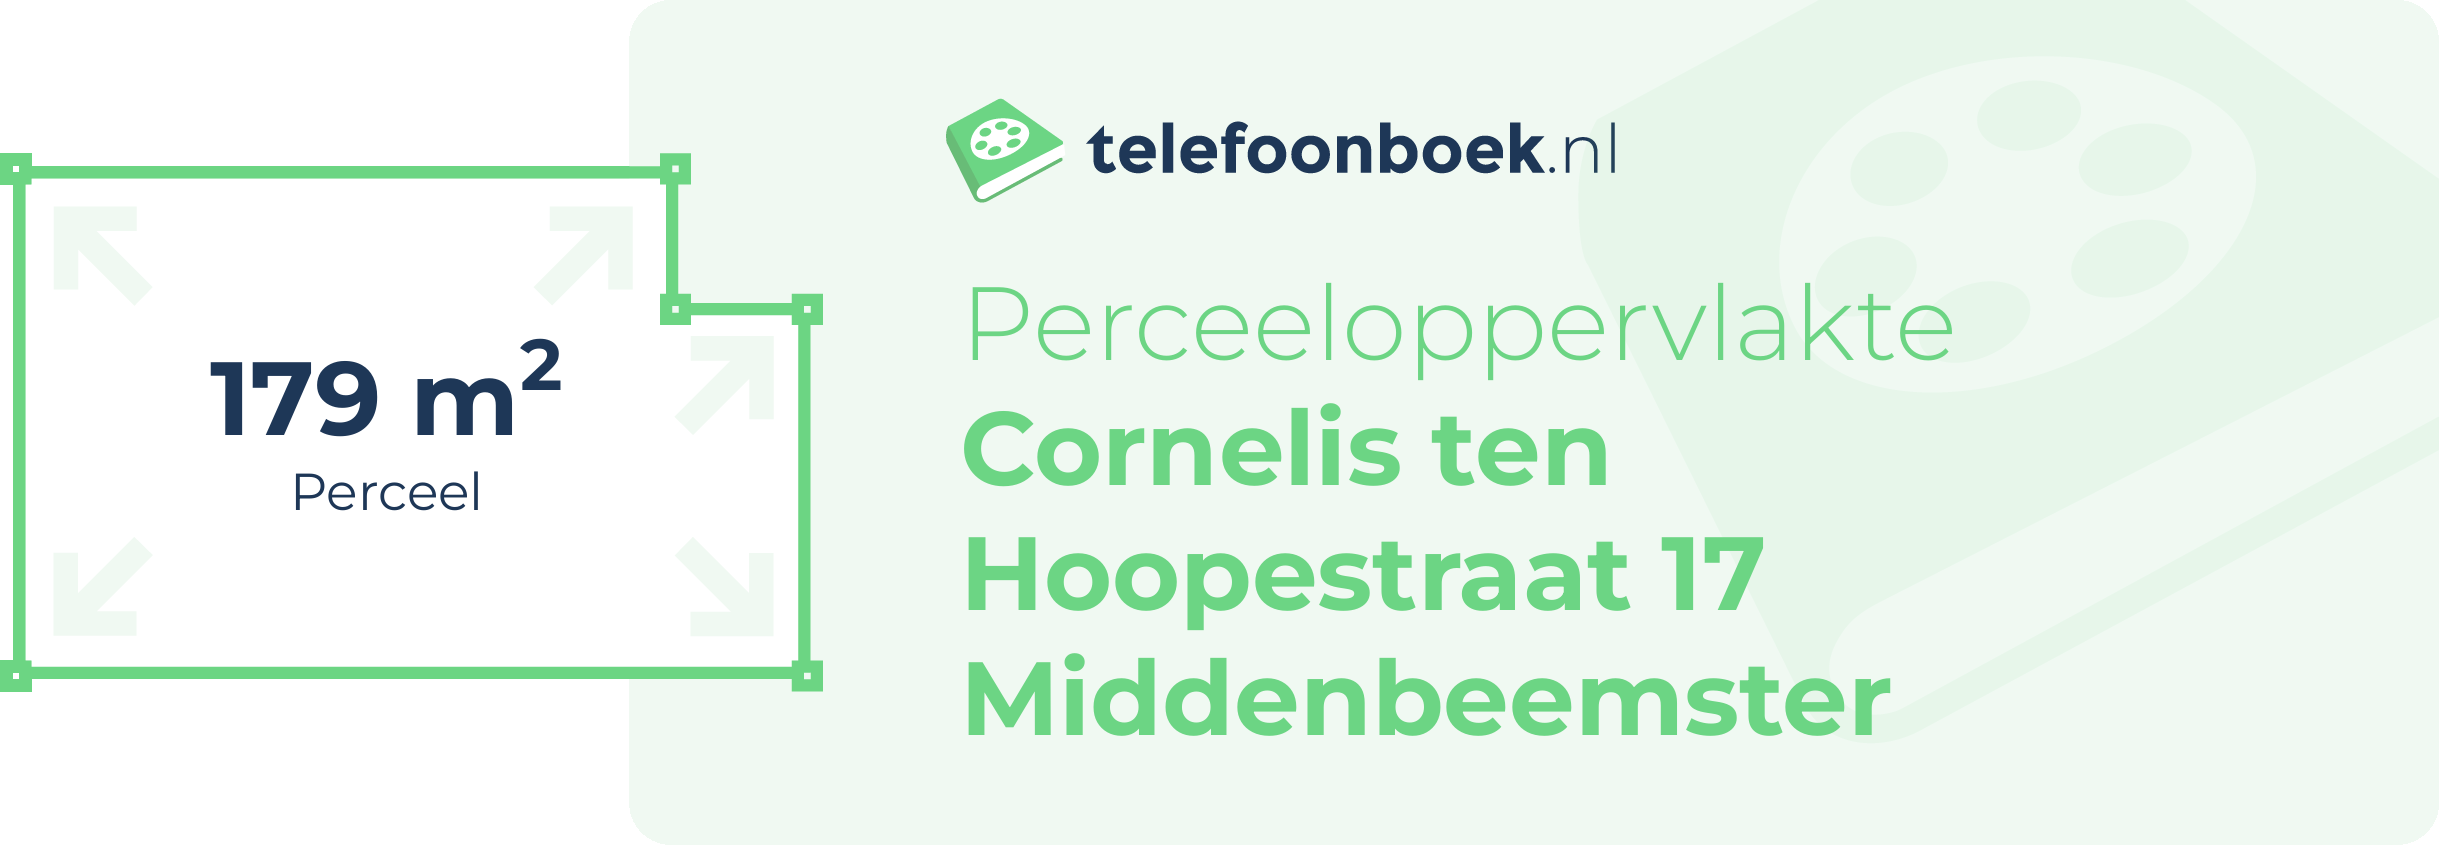 Perceeloppervlakte Cornelis Ten Hoopestraat 17 Middenbeemster